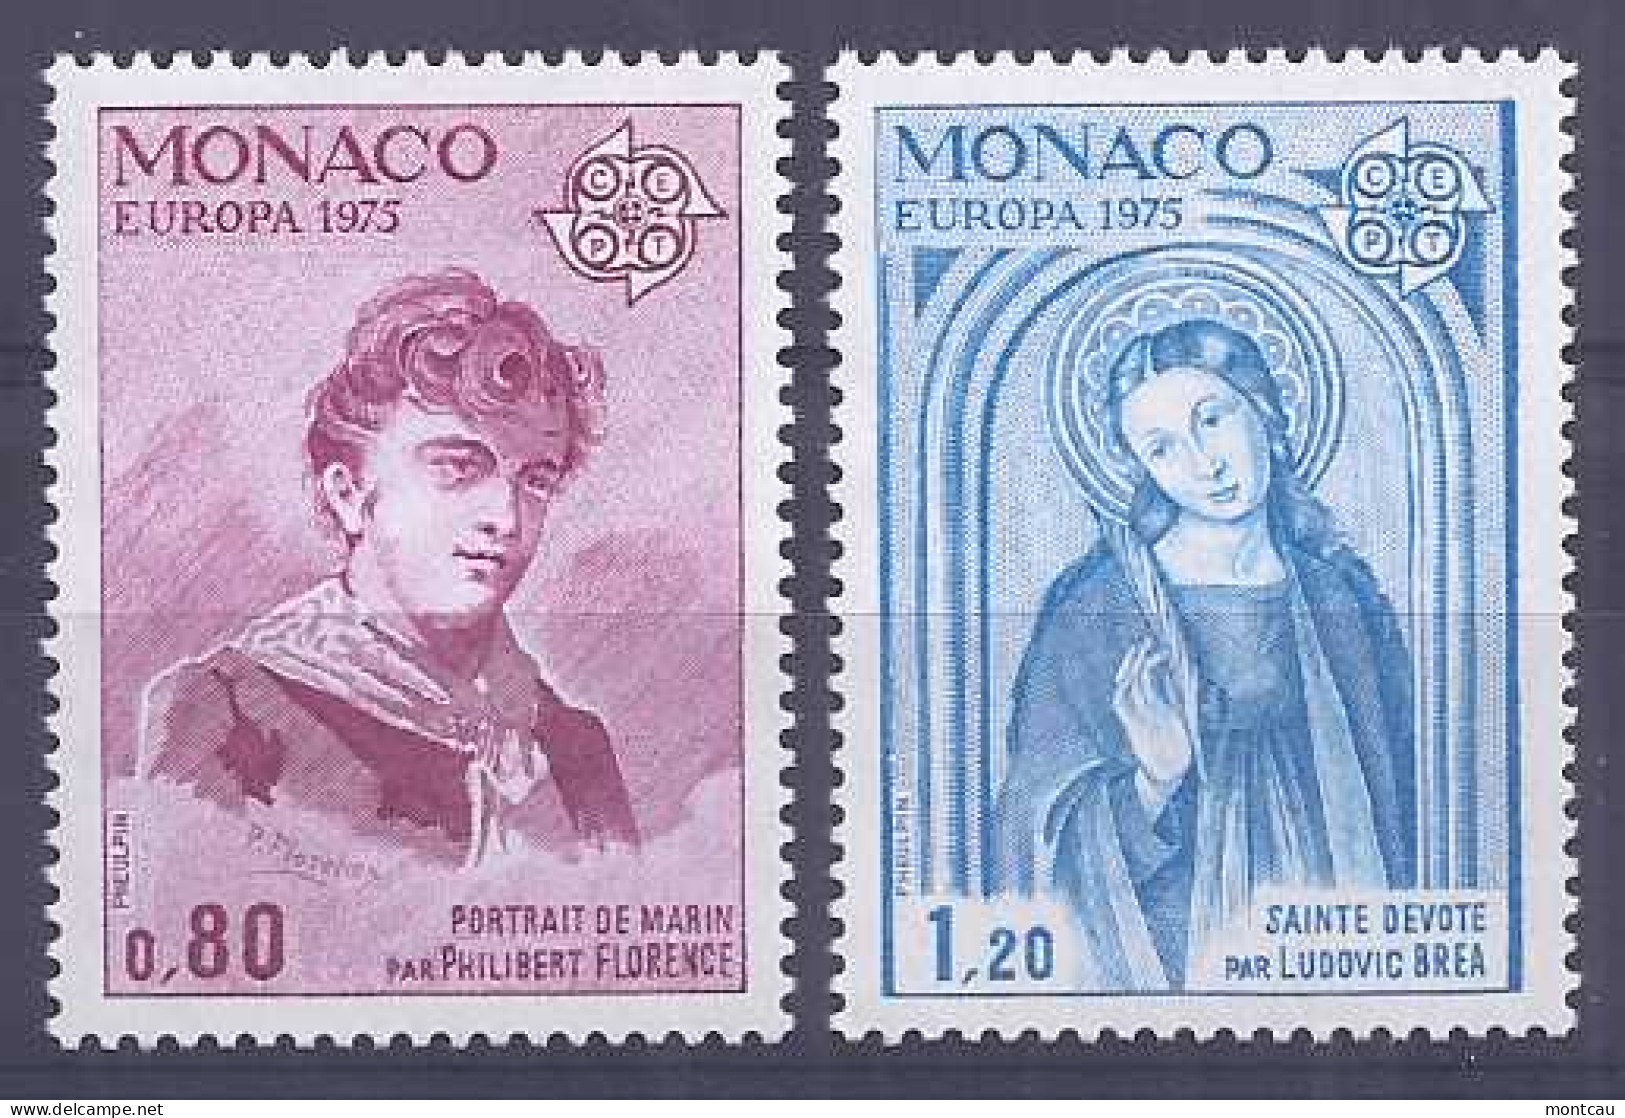 Europa 1975. Monaco Mi 1167-68 MNH (**) - 1975